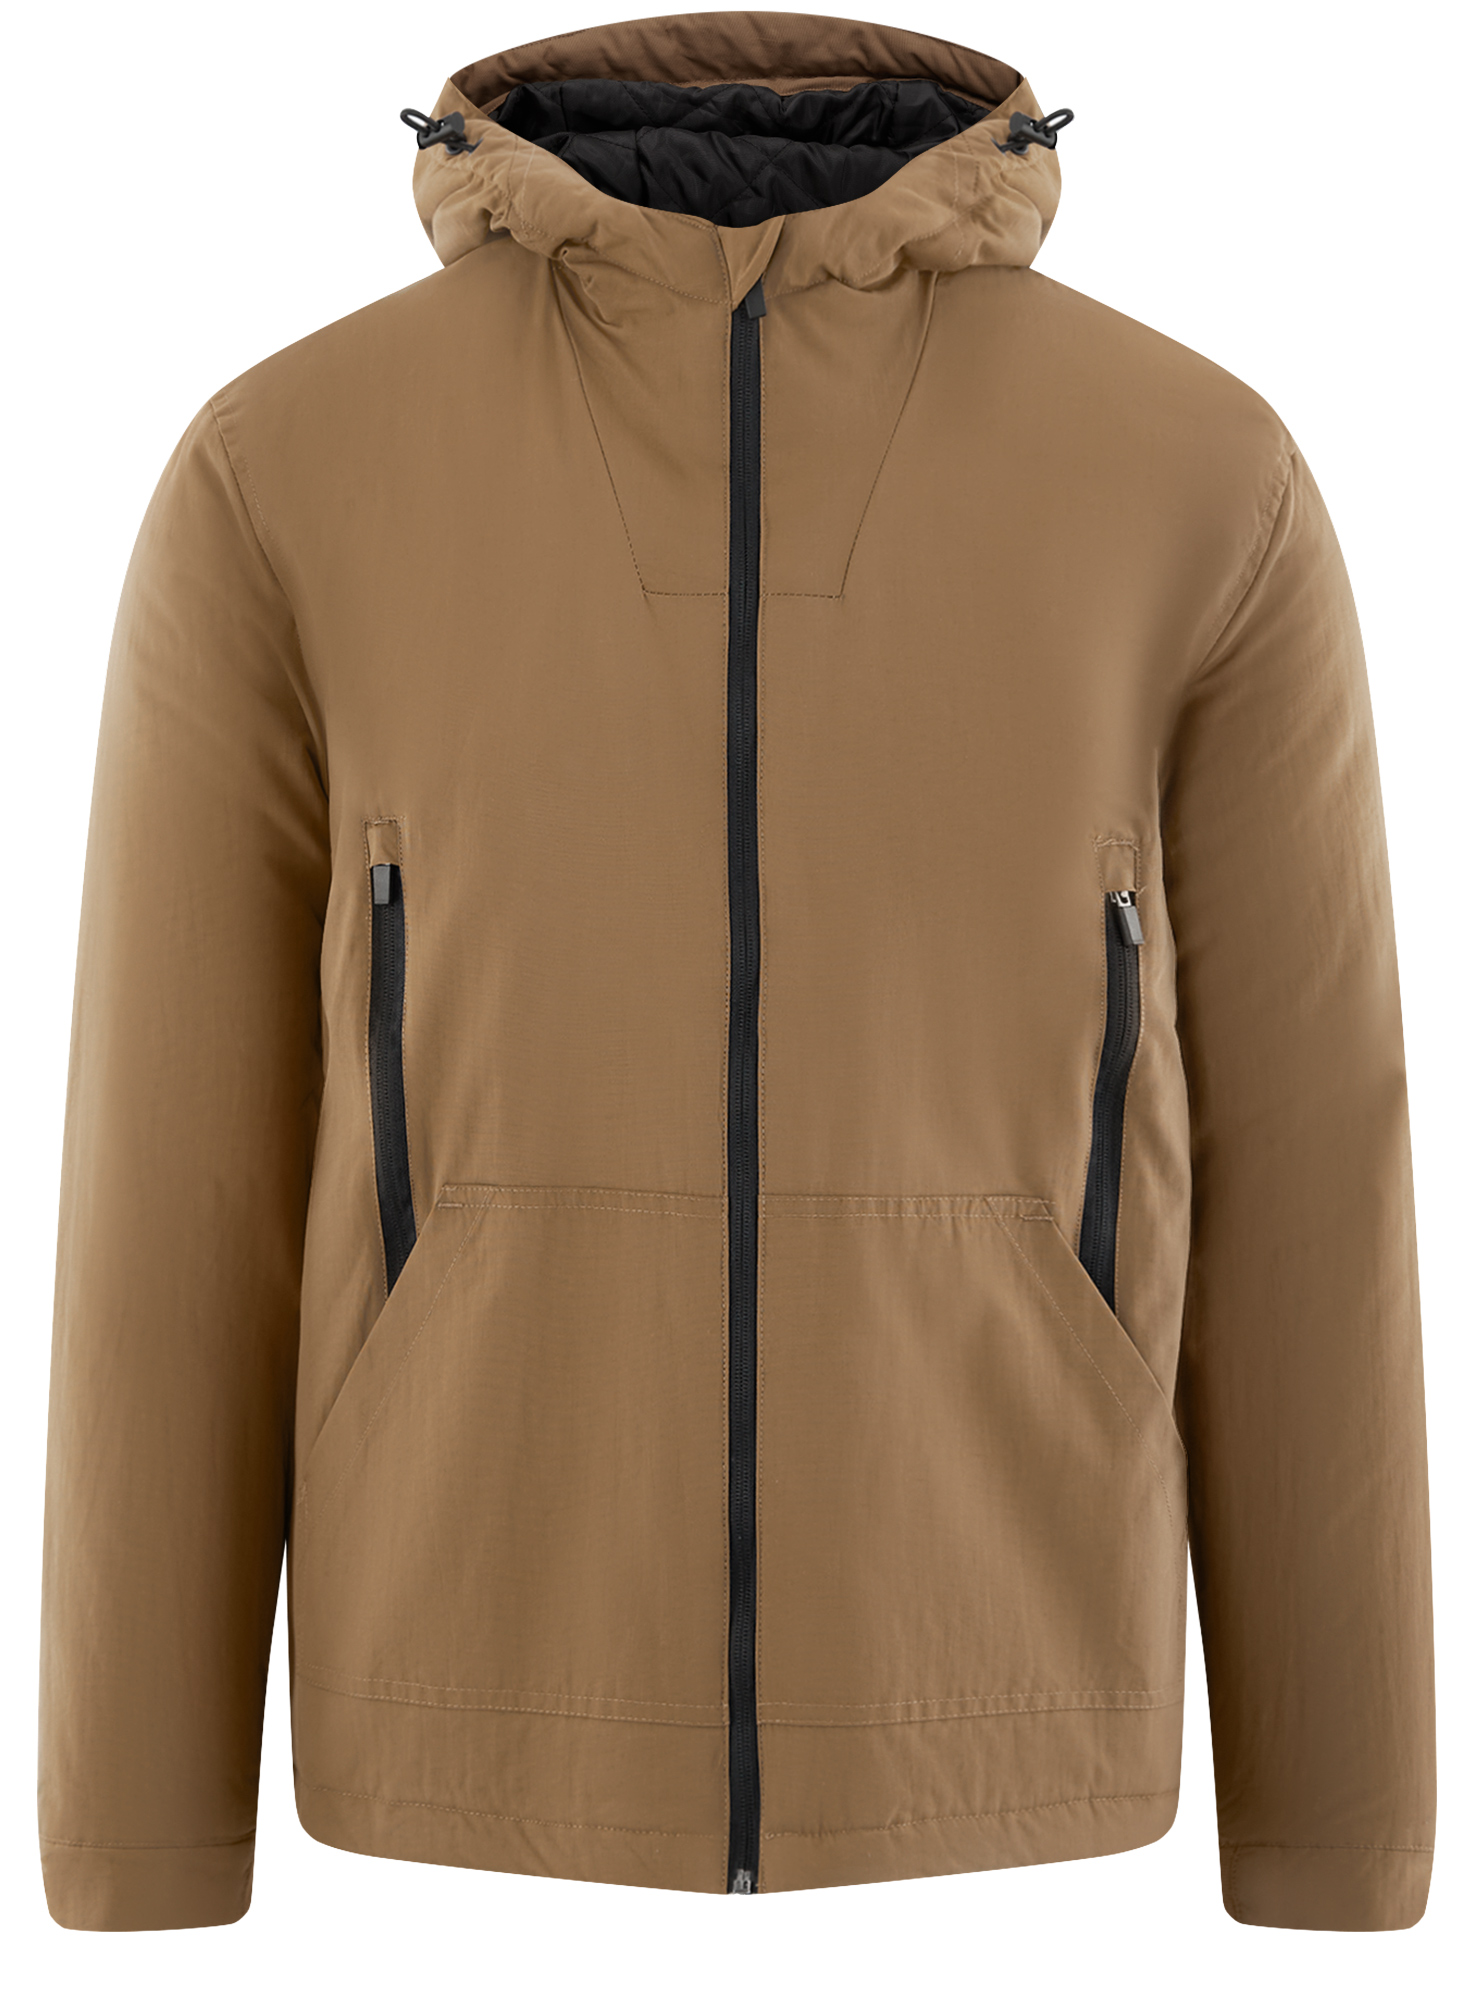 Куртка мужская oodji 1B515003M коричневая S